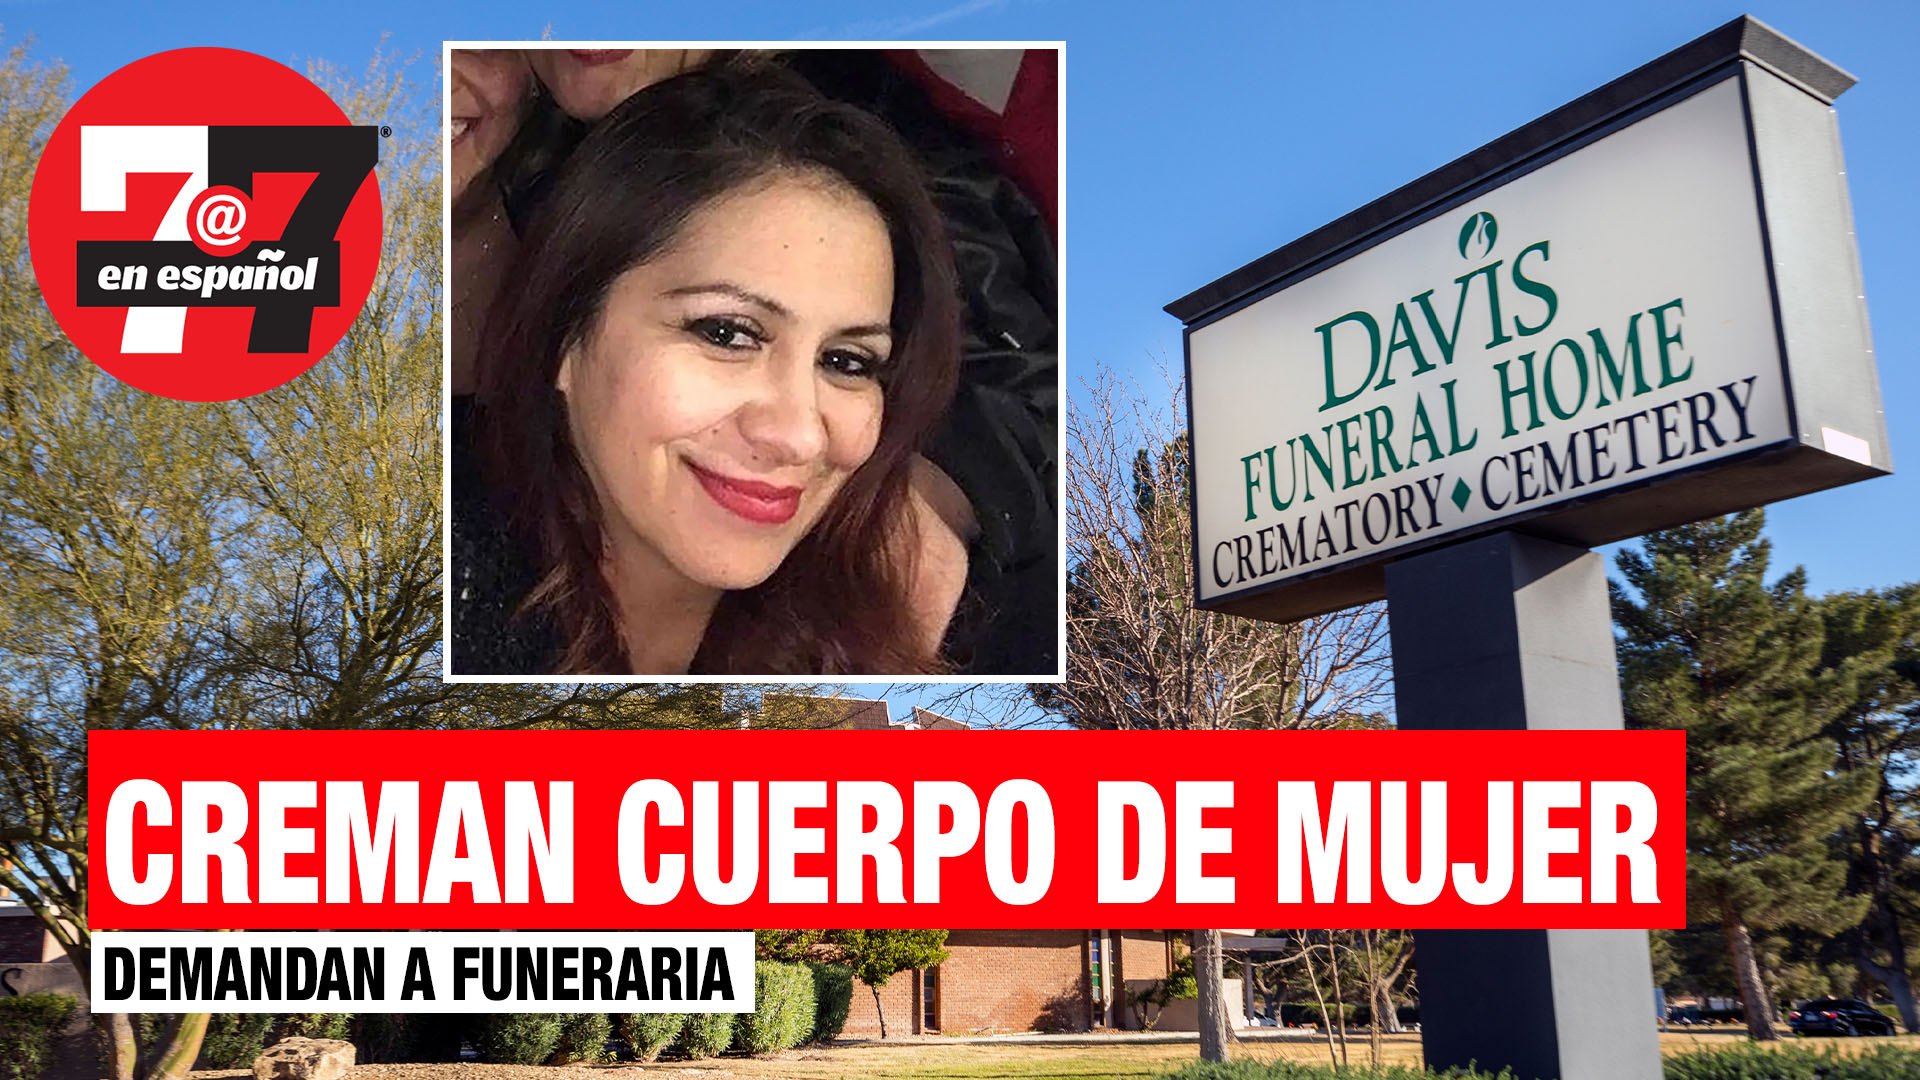 Noticias de Las Vegas | Demandan a funeraria por cremar a mujer por accidente